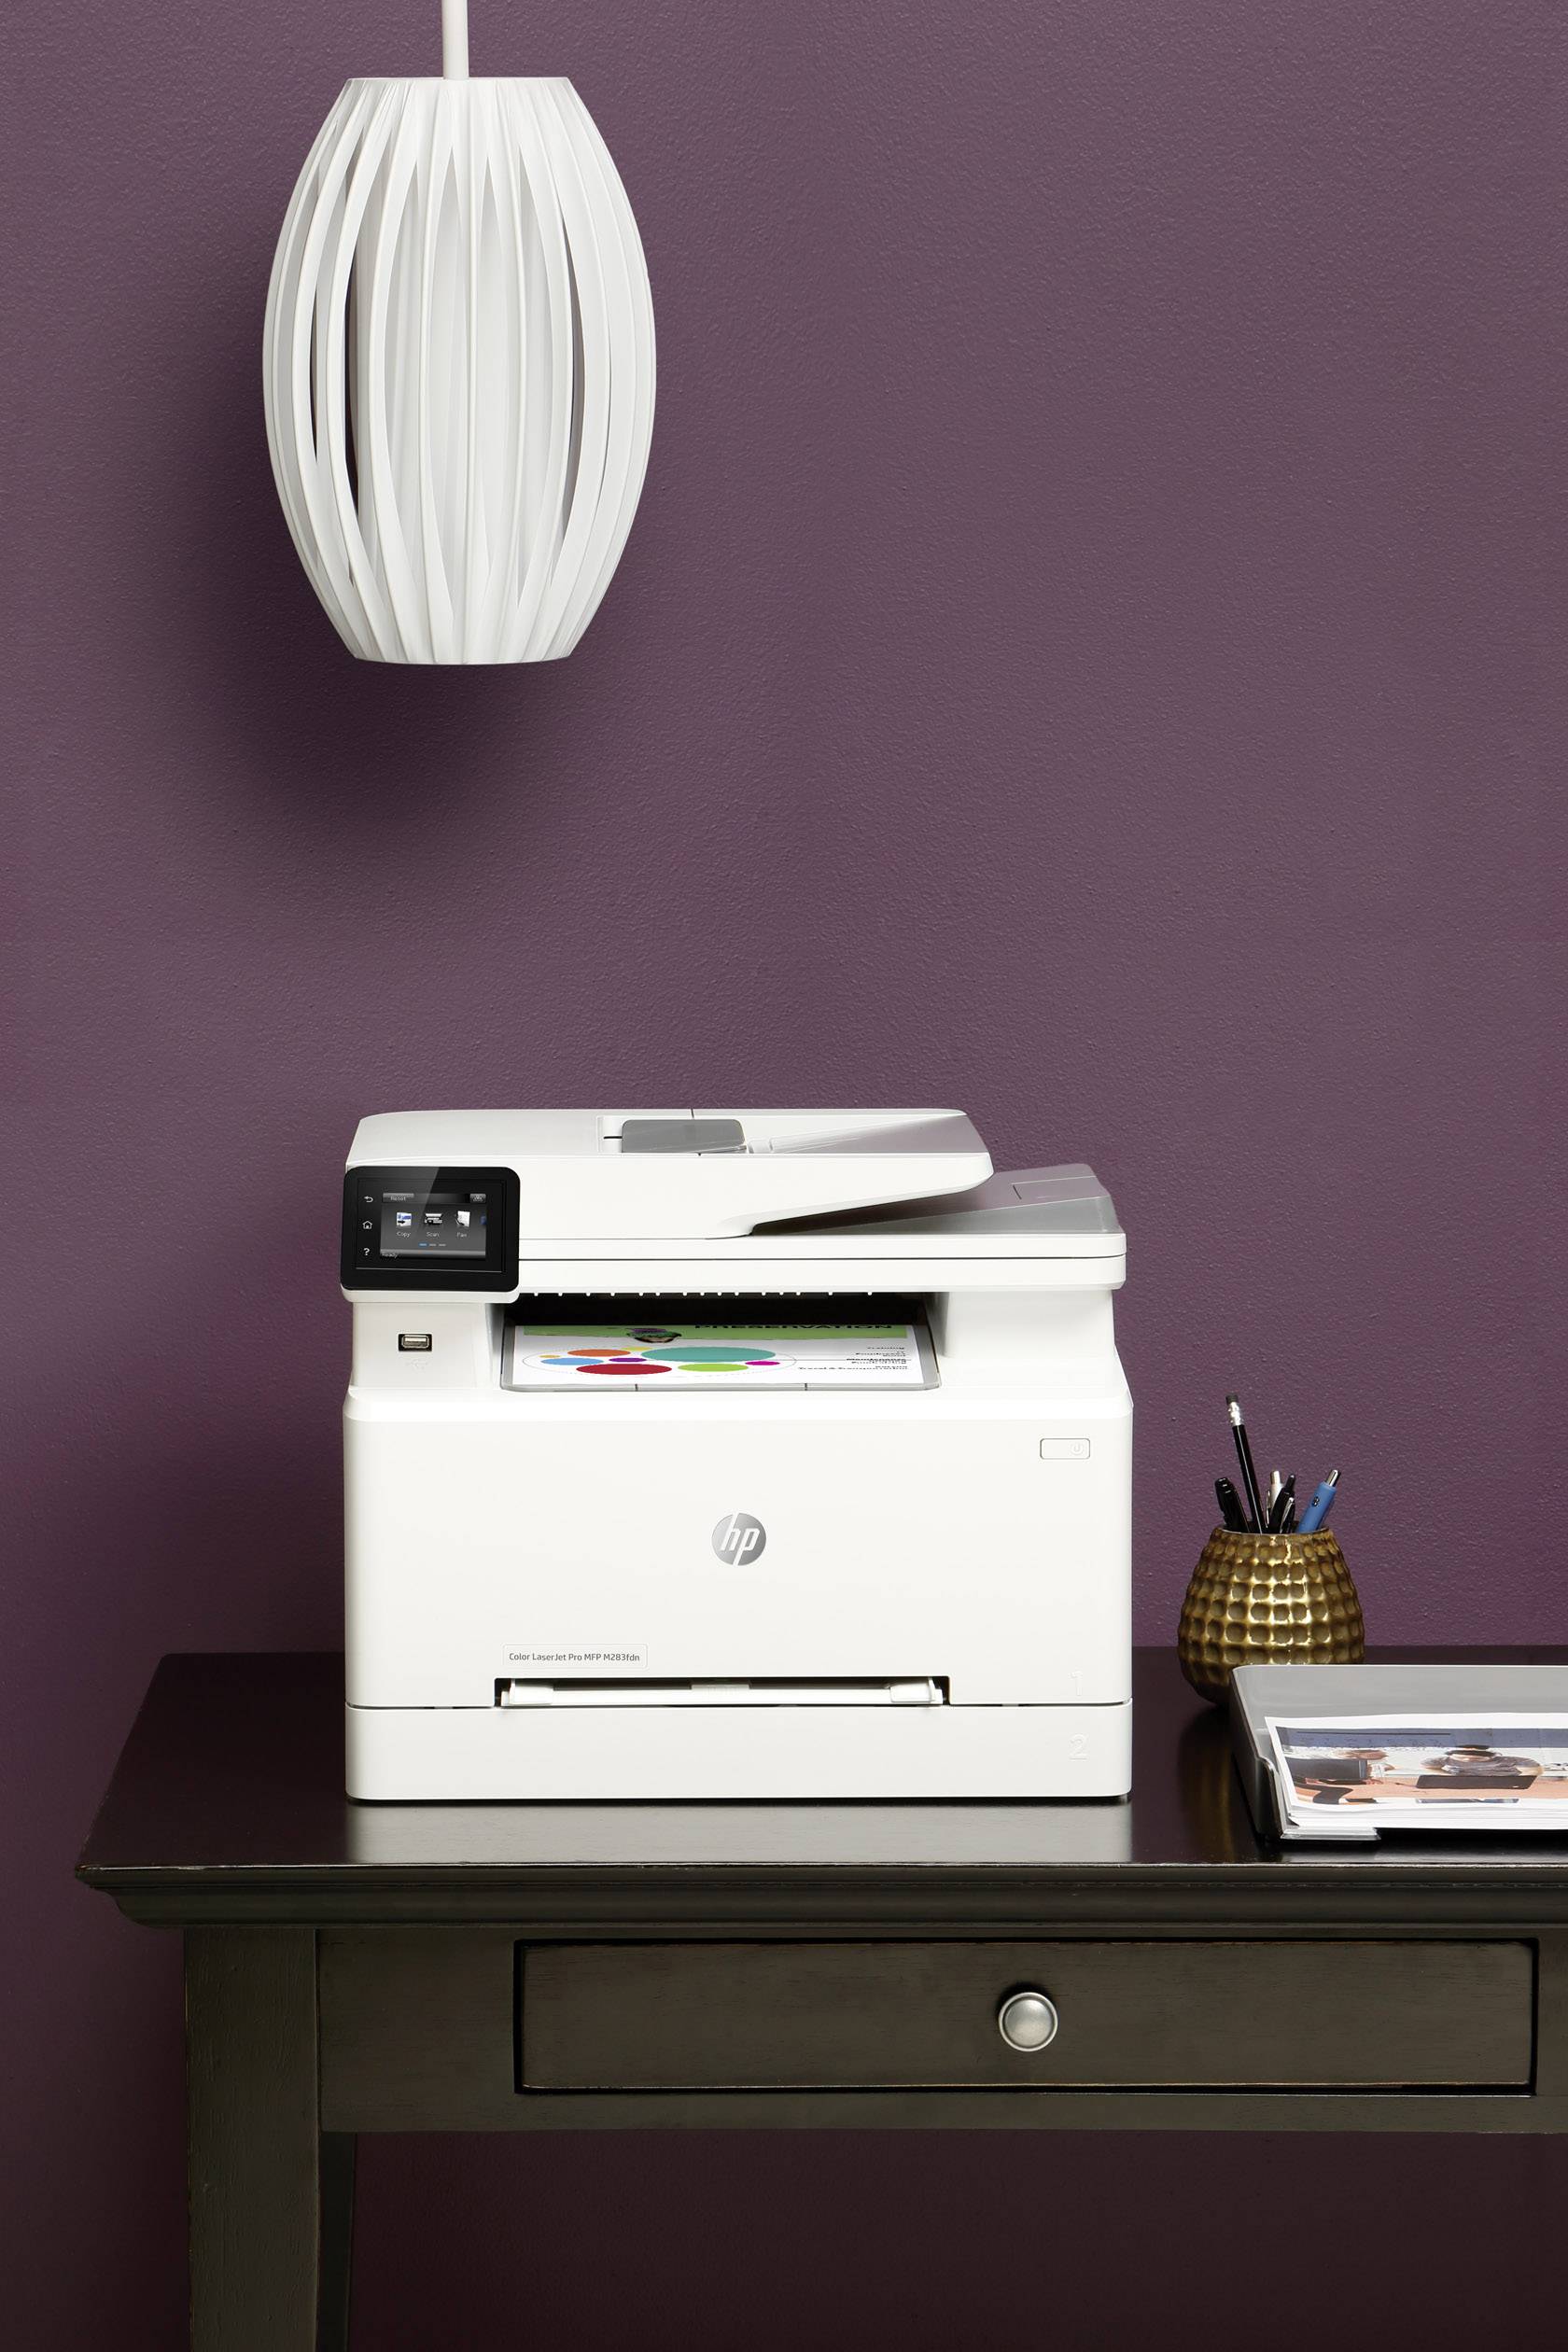 laserjet scanner printer copier